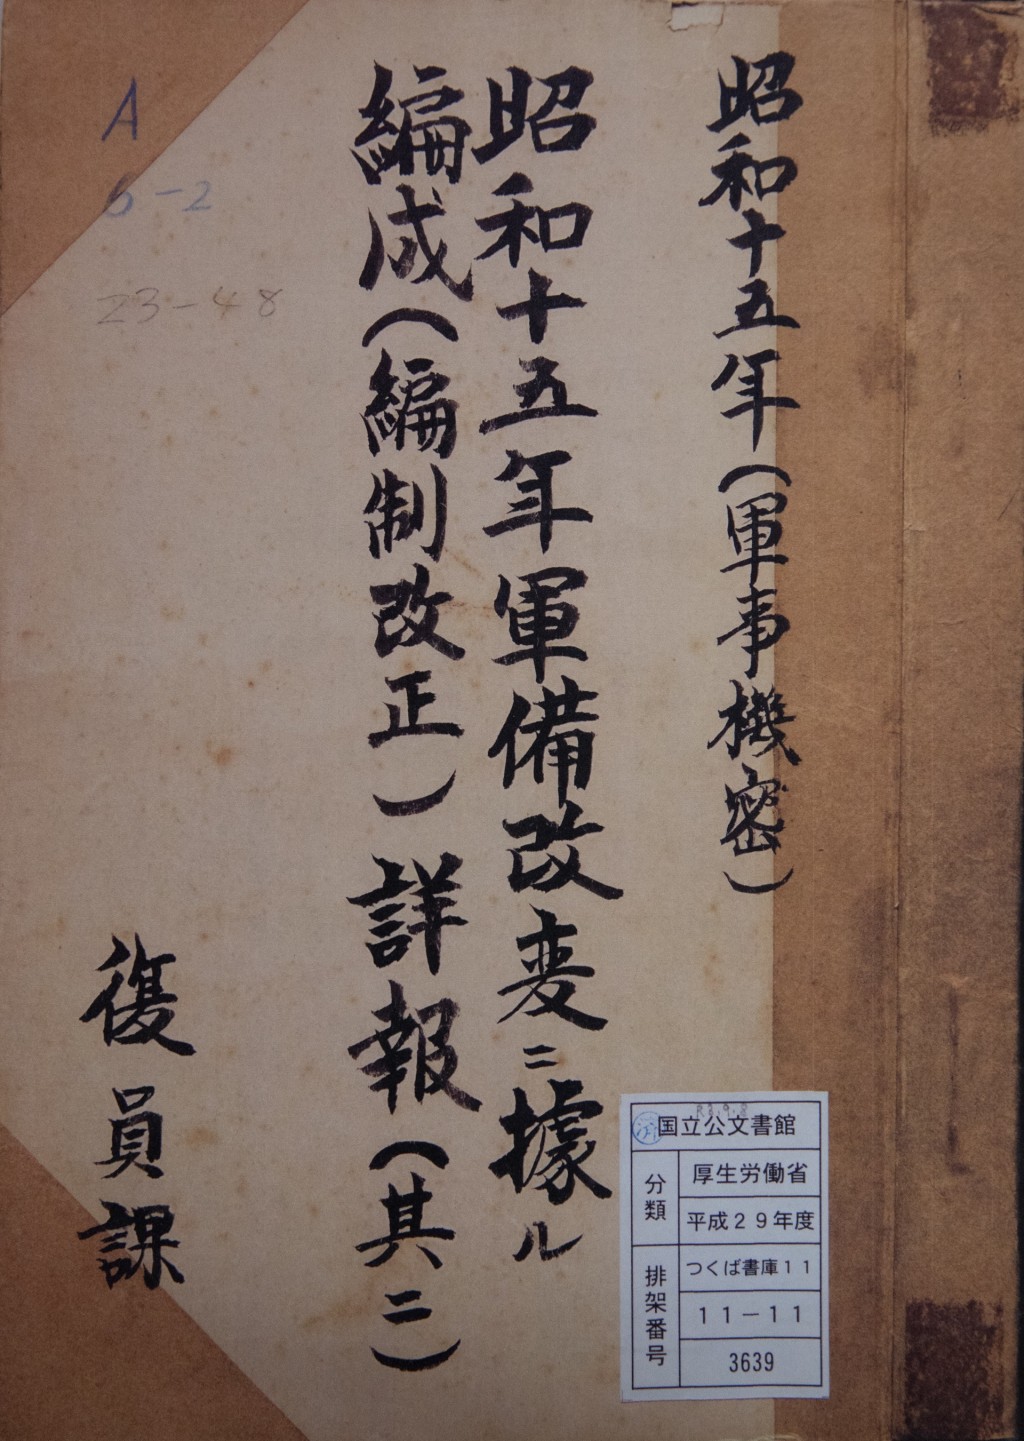 相關文件在日本厚生勞動省移交給國立公文書館保管的文件中發現。 新華社